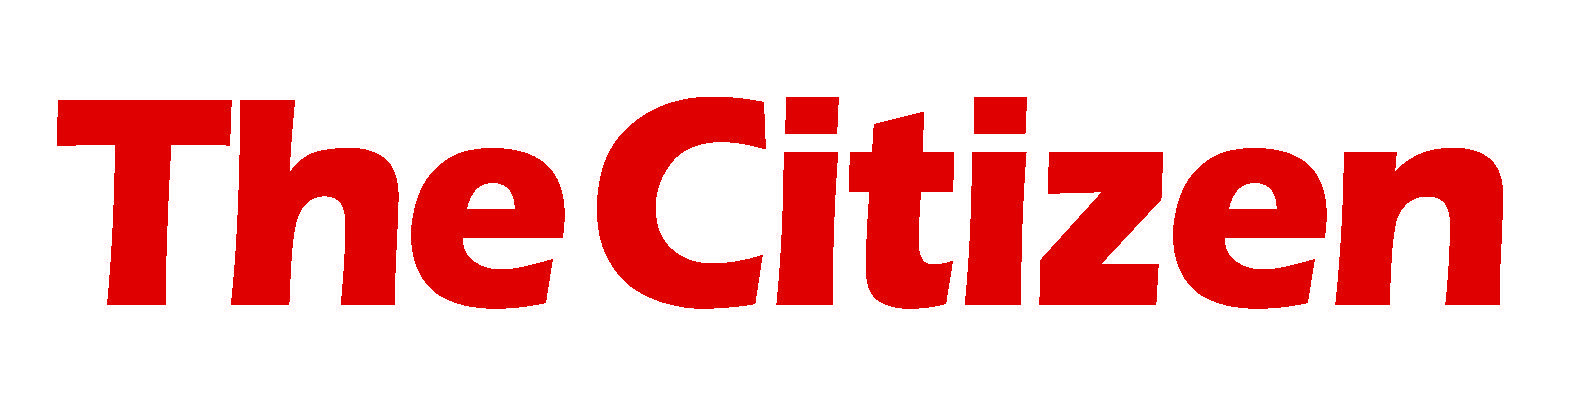 Citizen Logo - THE CITIZEN logo - Debtbusters